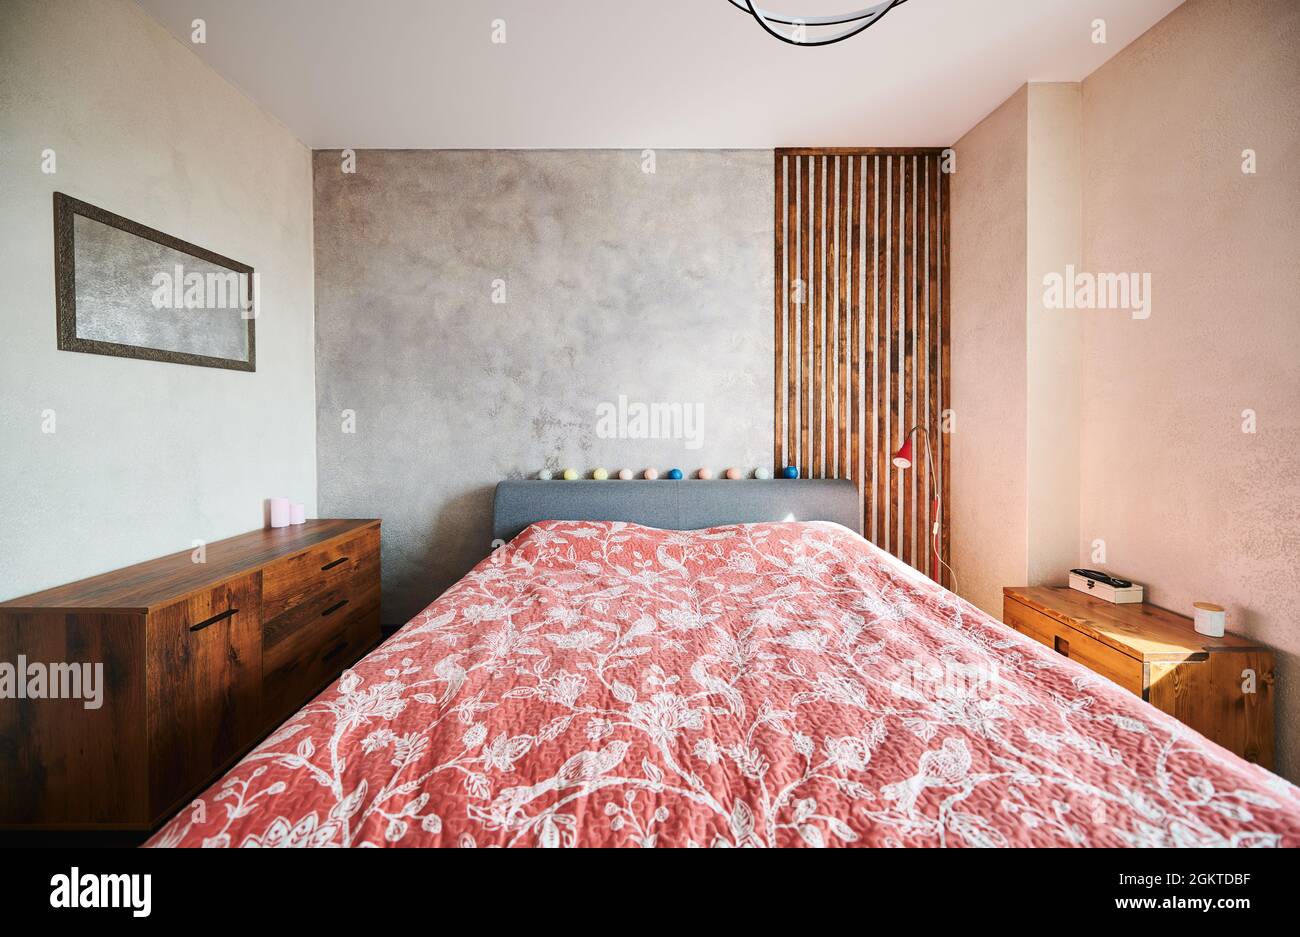 Blick auf das Design des Rutschzimmers mit großem Bett und roter Blumendecke. Schlafzimmer mit zwei hölzernen Kommode. Konzept der Schlafzimmer-Innenausstattung. Stockfoto